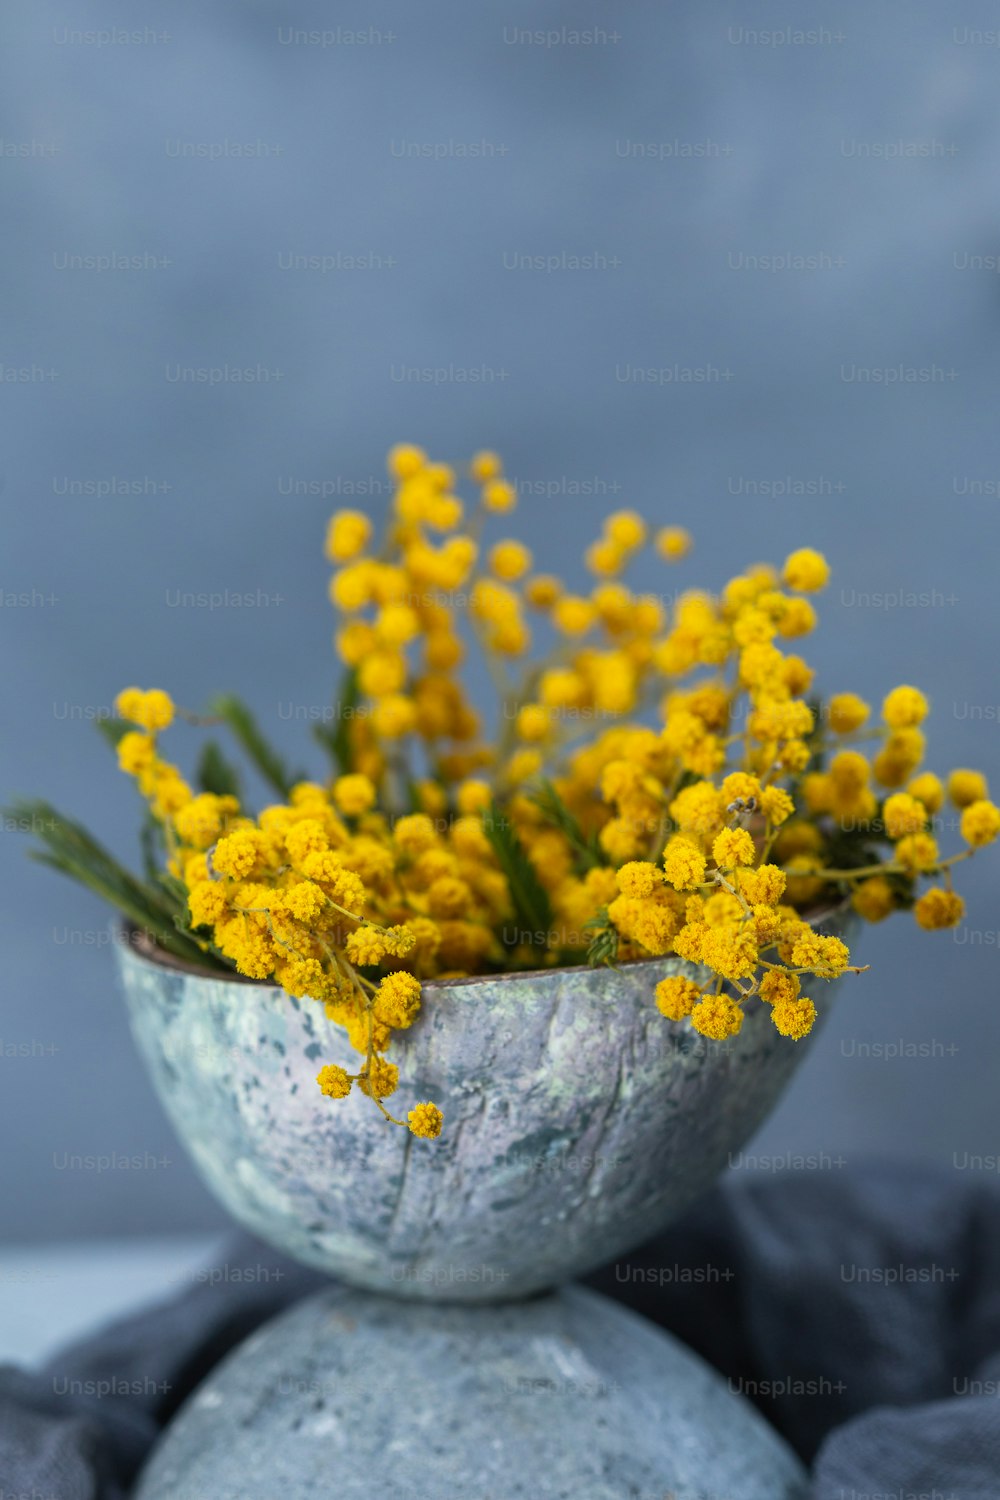 바위 위에 앉아 있는 노란 꽃으로 가득 찬 꽃병